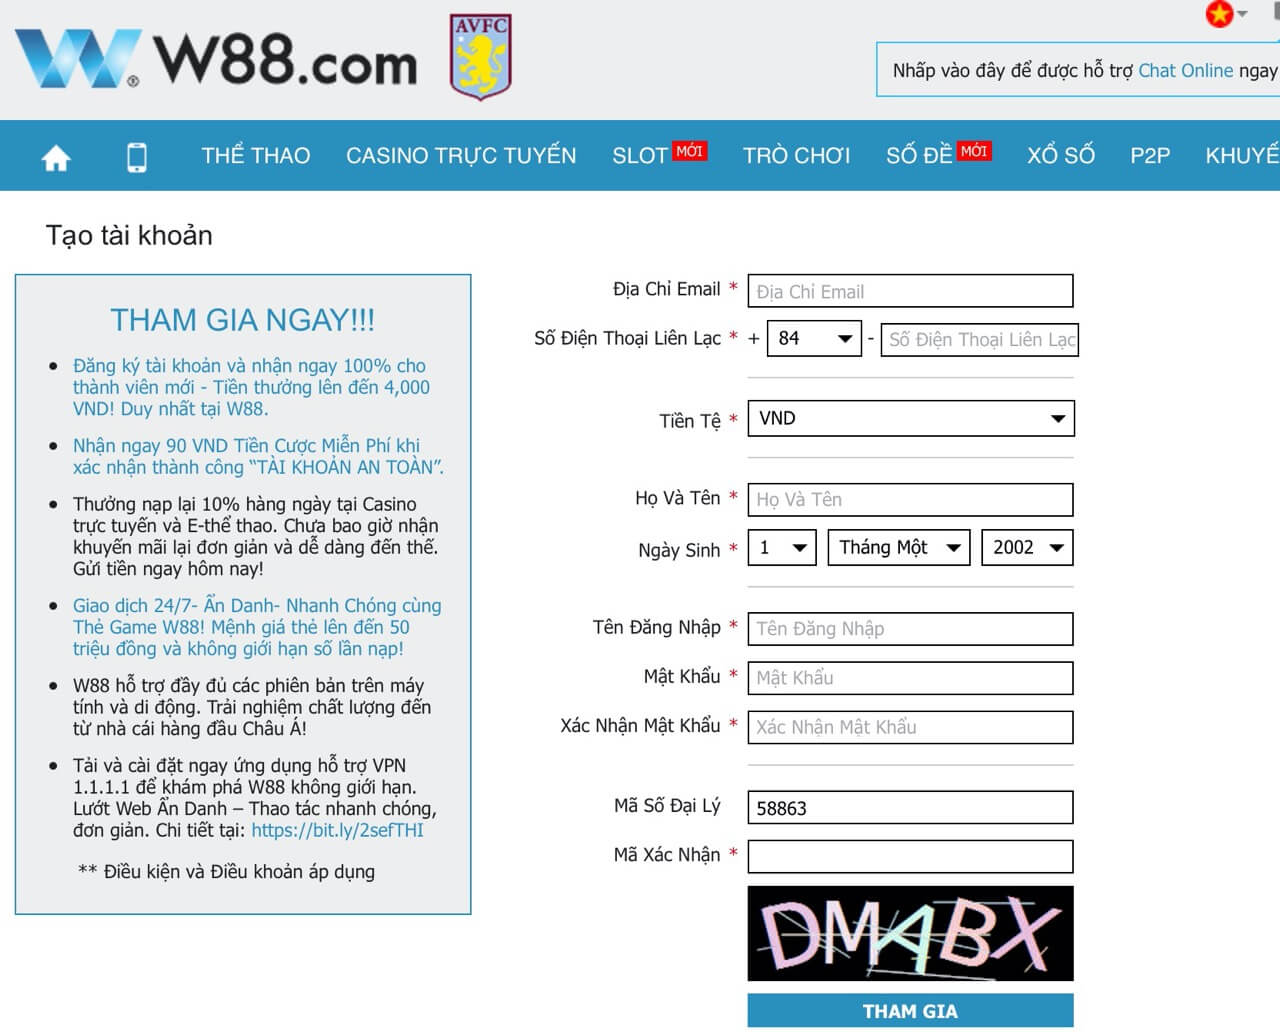 Hướng dẫn mở tài khoản cá cược bóng đá qua mạng tại W88